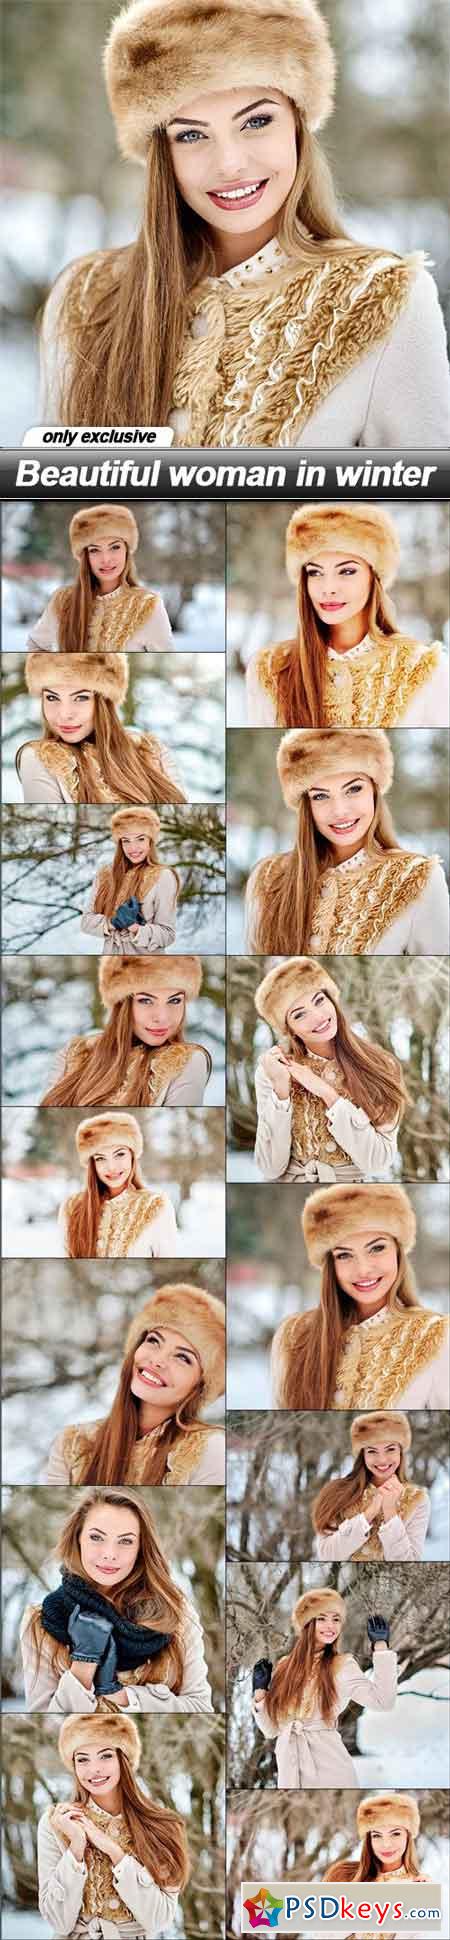 Beautiful woman in winter - 15 UHQ JPEG